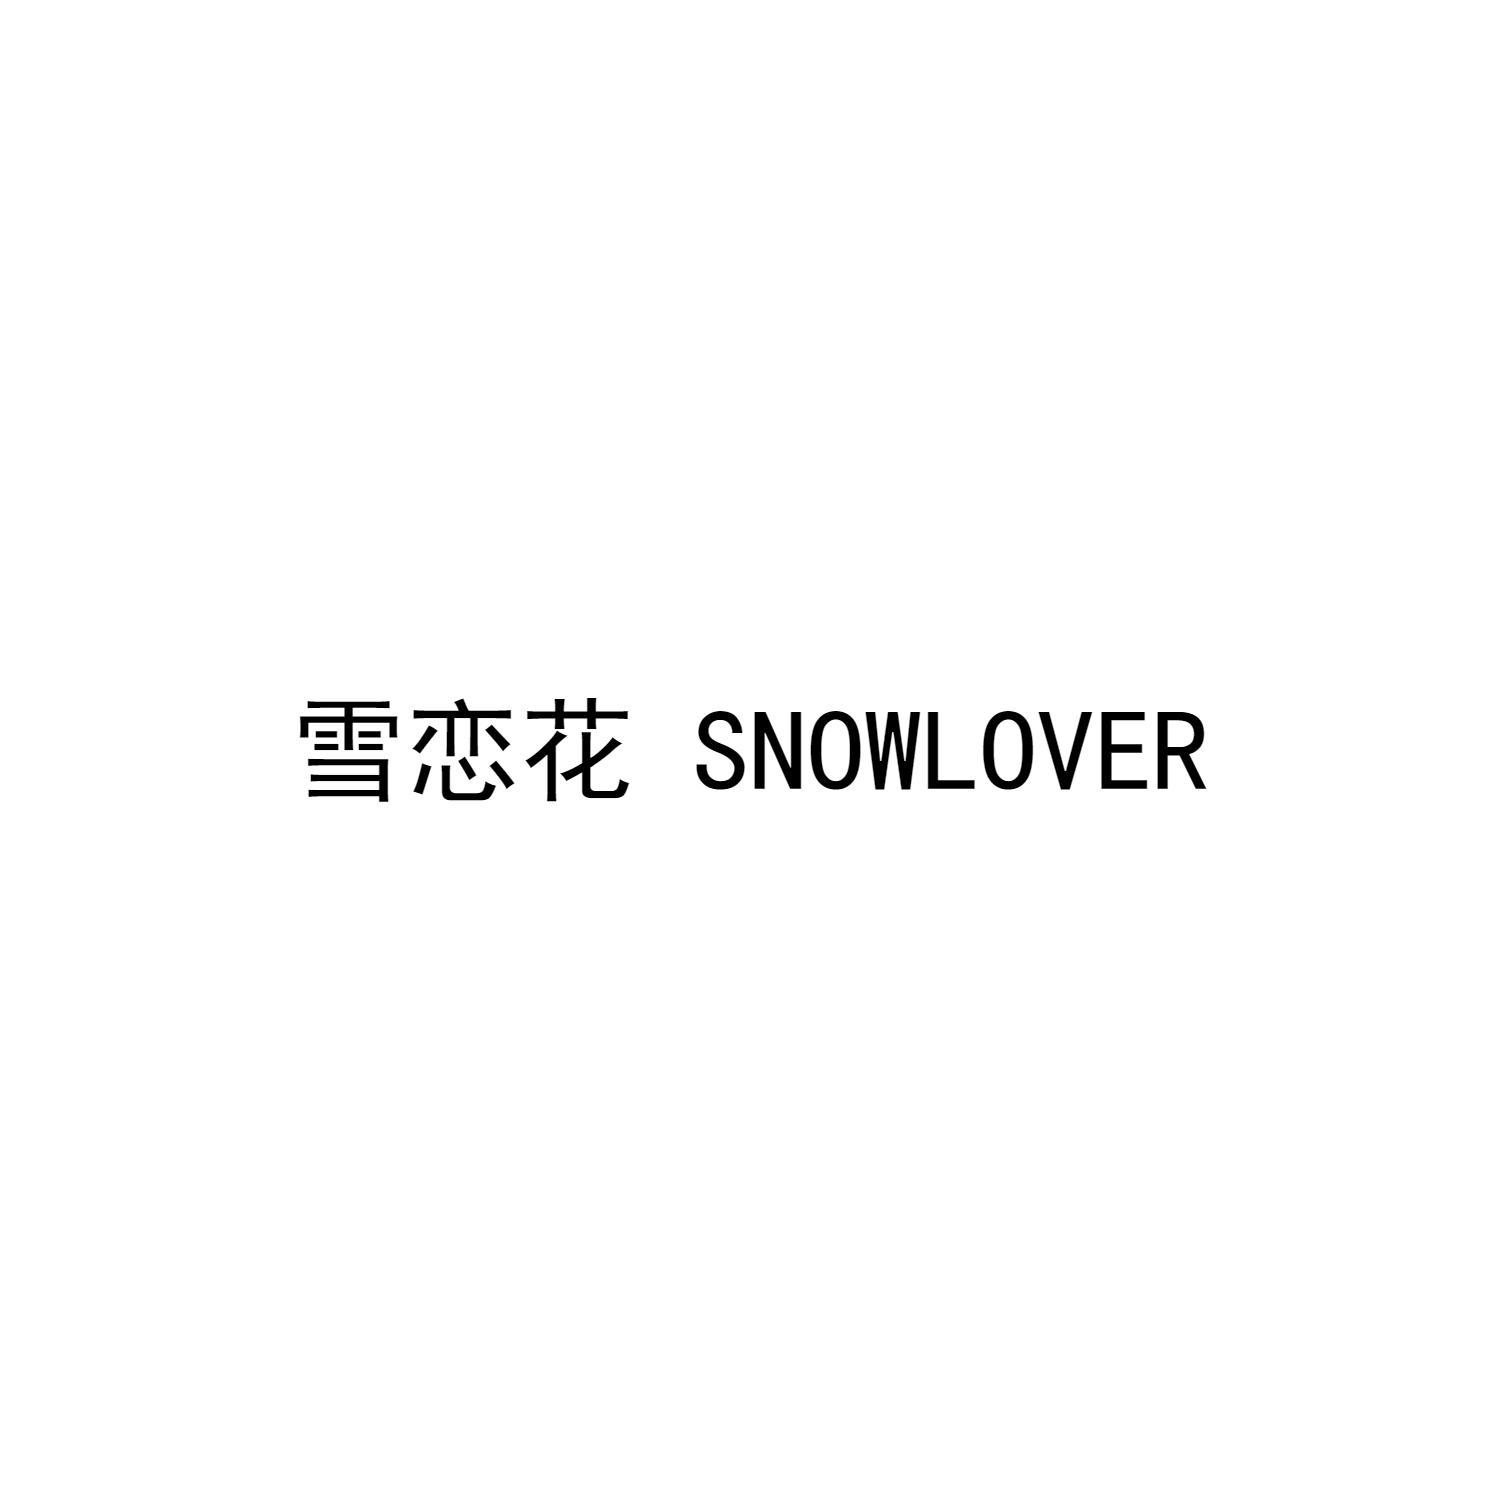 雪恋花 SNOWLOVER